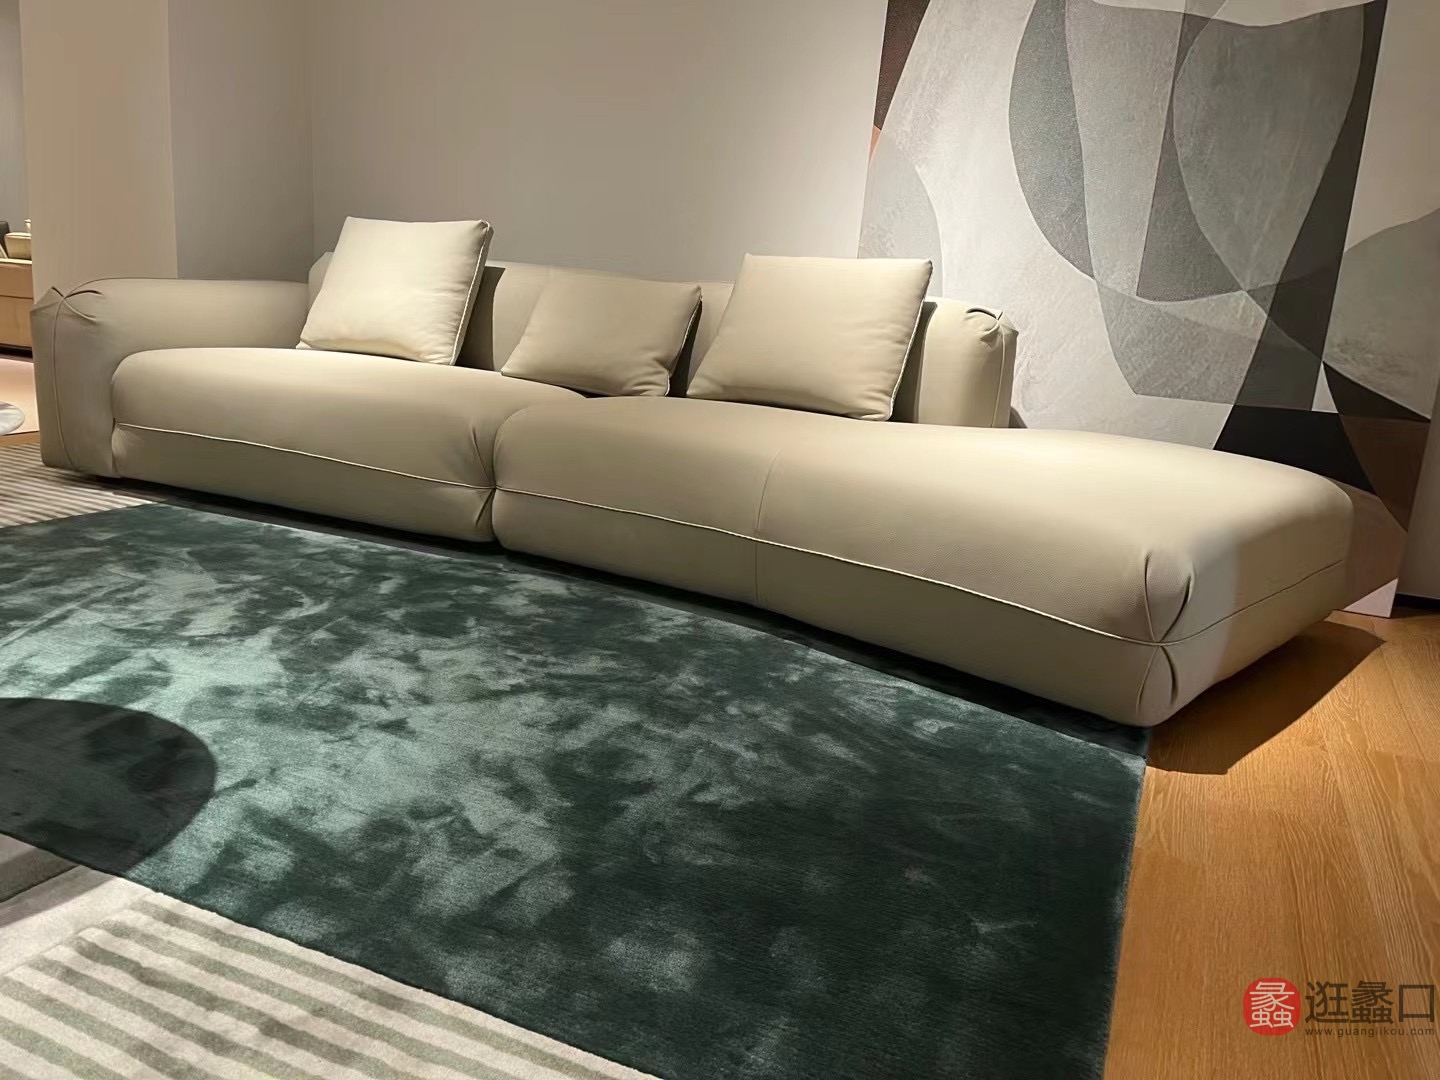 思莱德家具客厅意式极简直排沙发四人位设计师款白色沙发模块云朵沙发SLD007